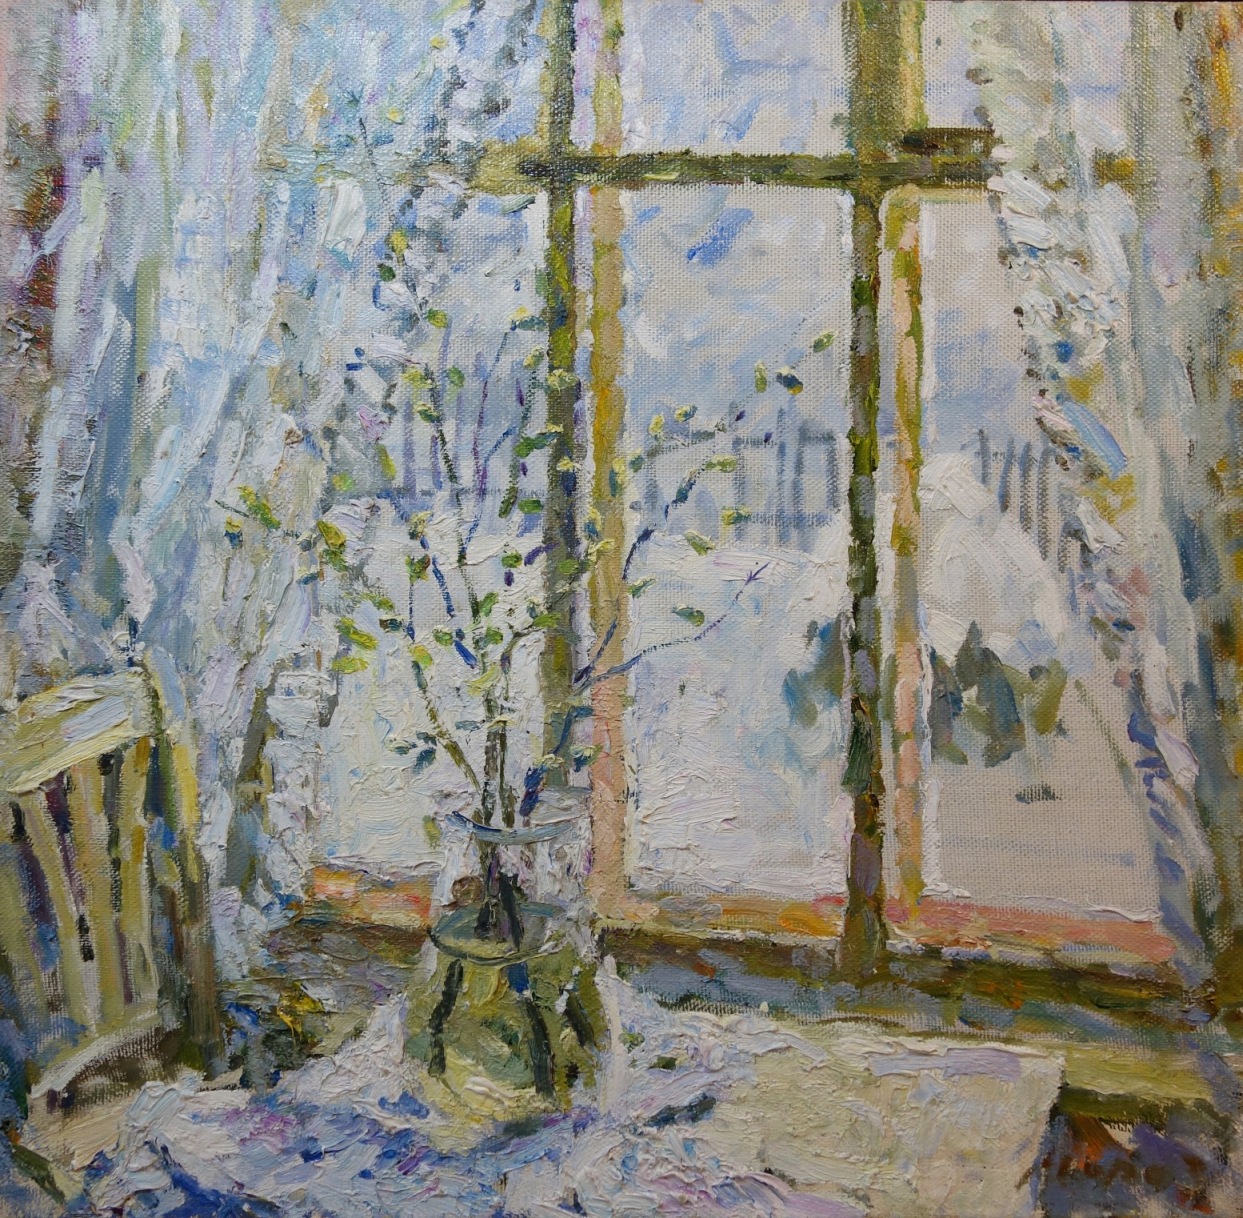 Georgij Moroz, Russian painting, Russian post-impressionism, snow, winter, window